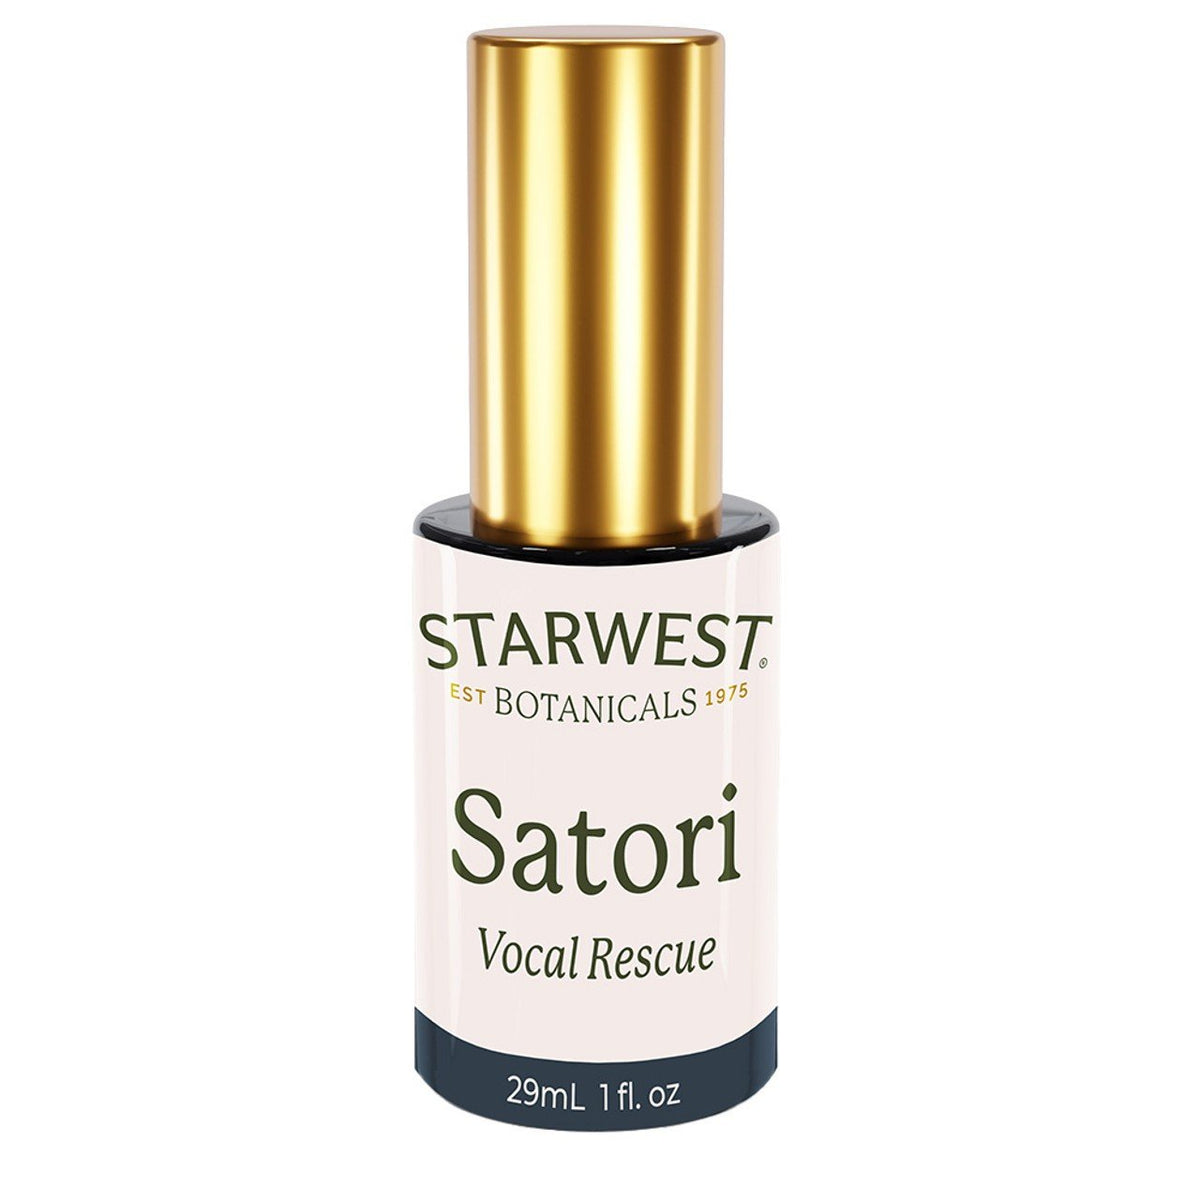 Starwest Botanicals Satori Vocal Rescue 1 oz Liquid